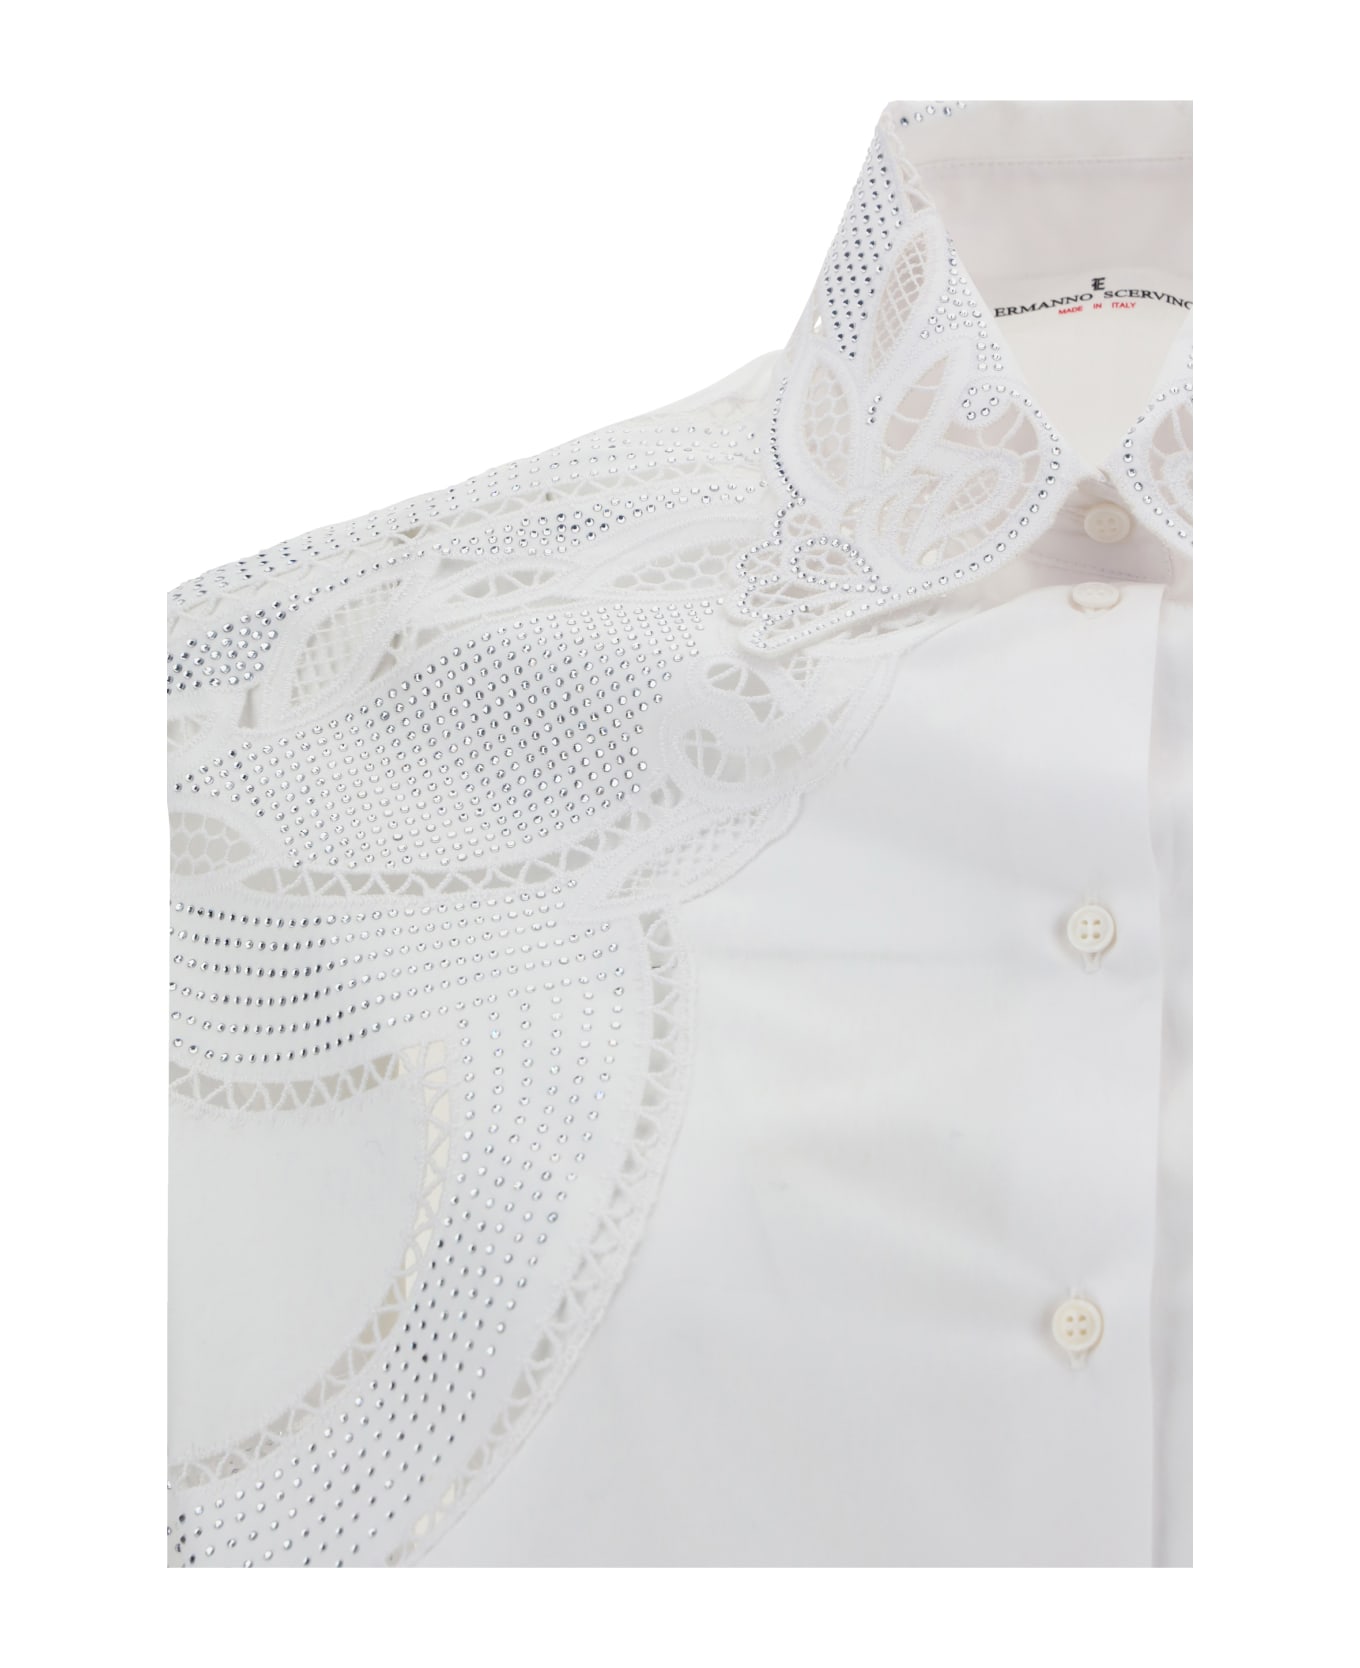 Ermanno Scervino Shirt - White シャツ